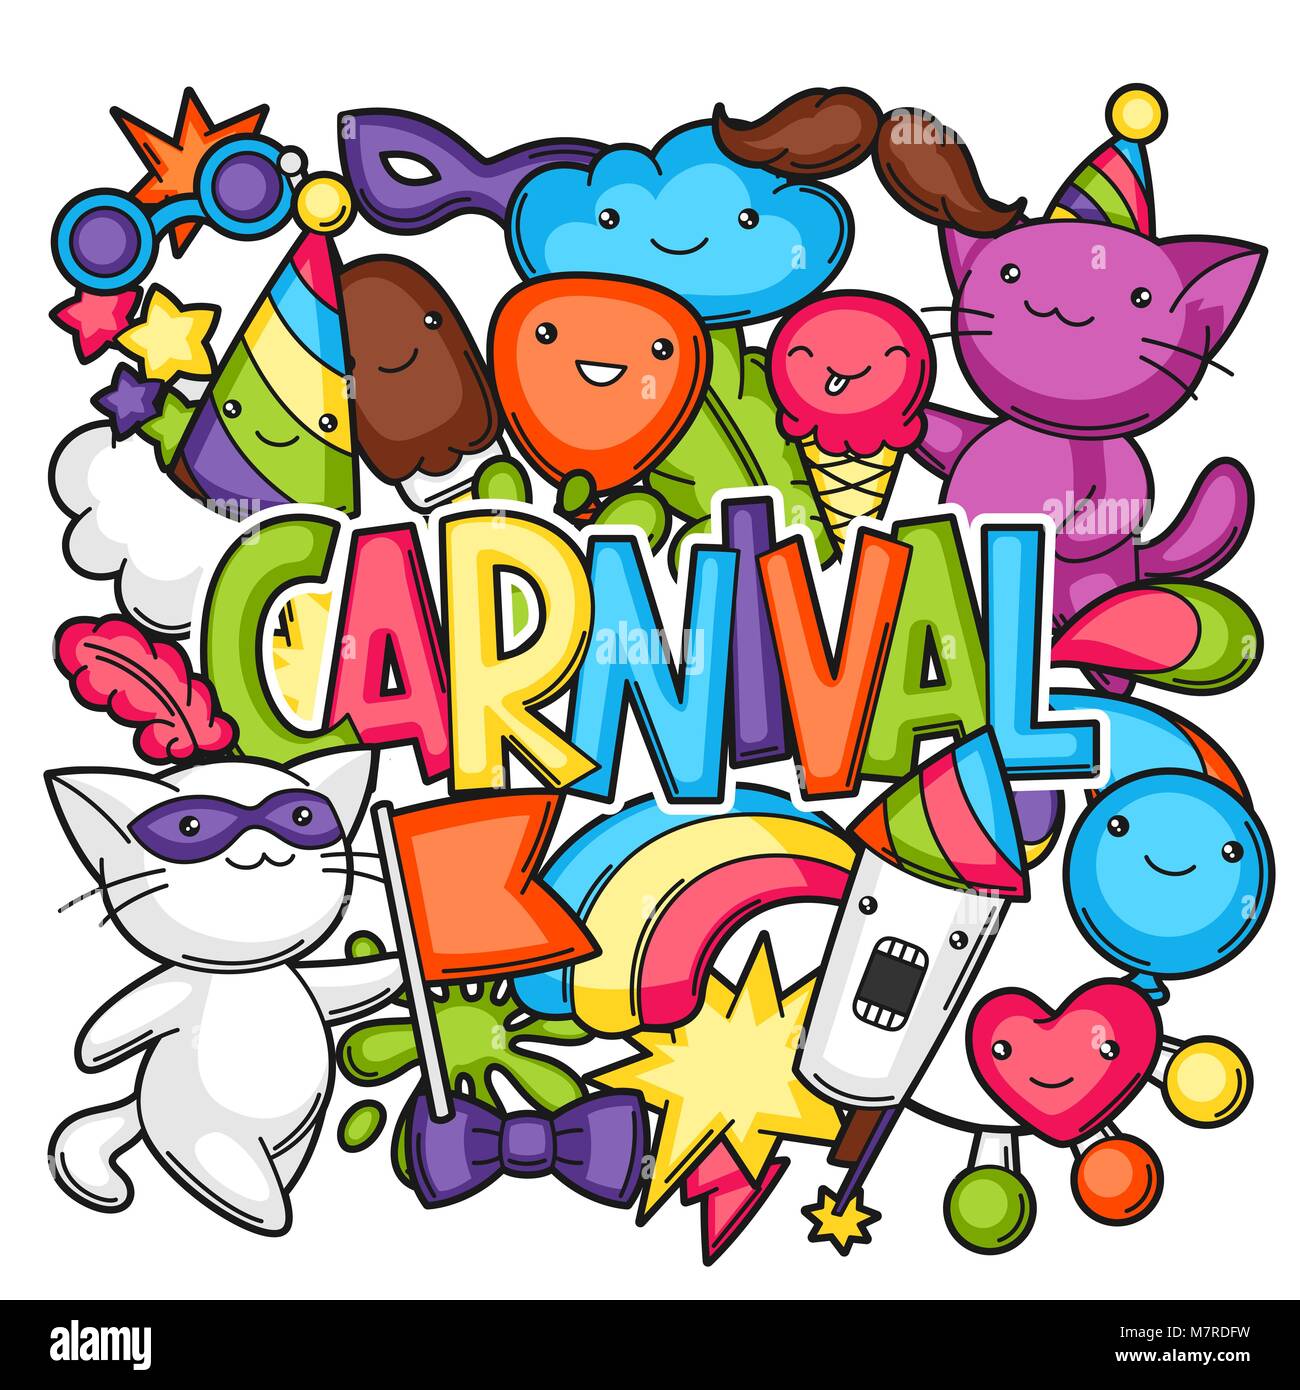 Karneval Party kawaii Drucken. Süße Katzen, Dekorationen für Feiern, Objekte und Symbole Stock Vektor